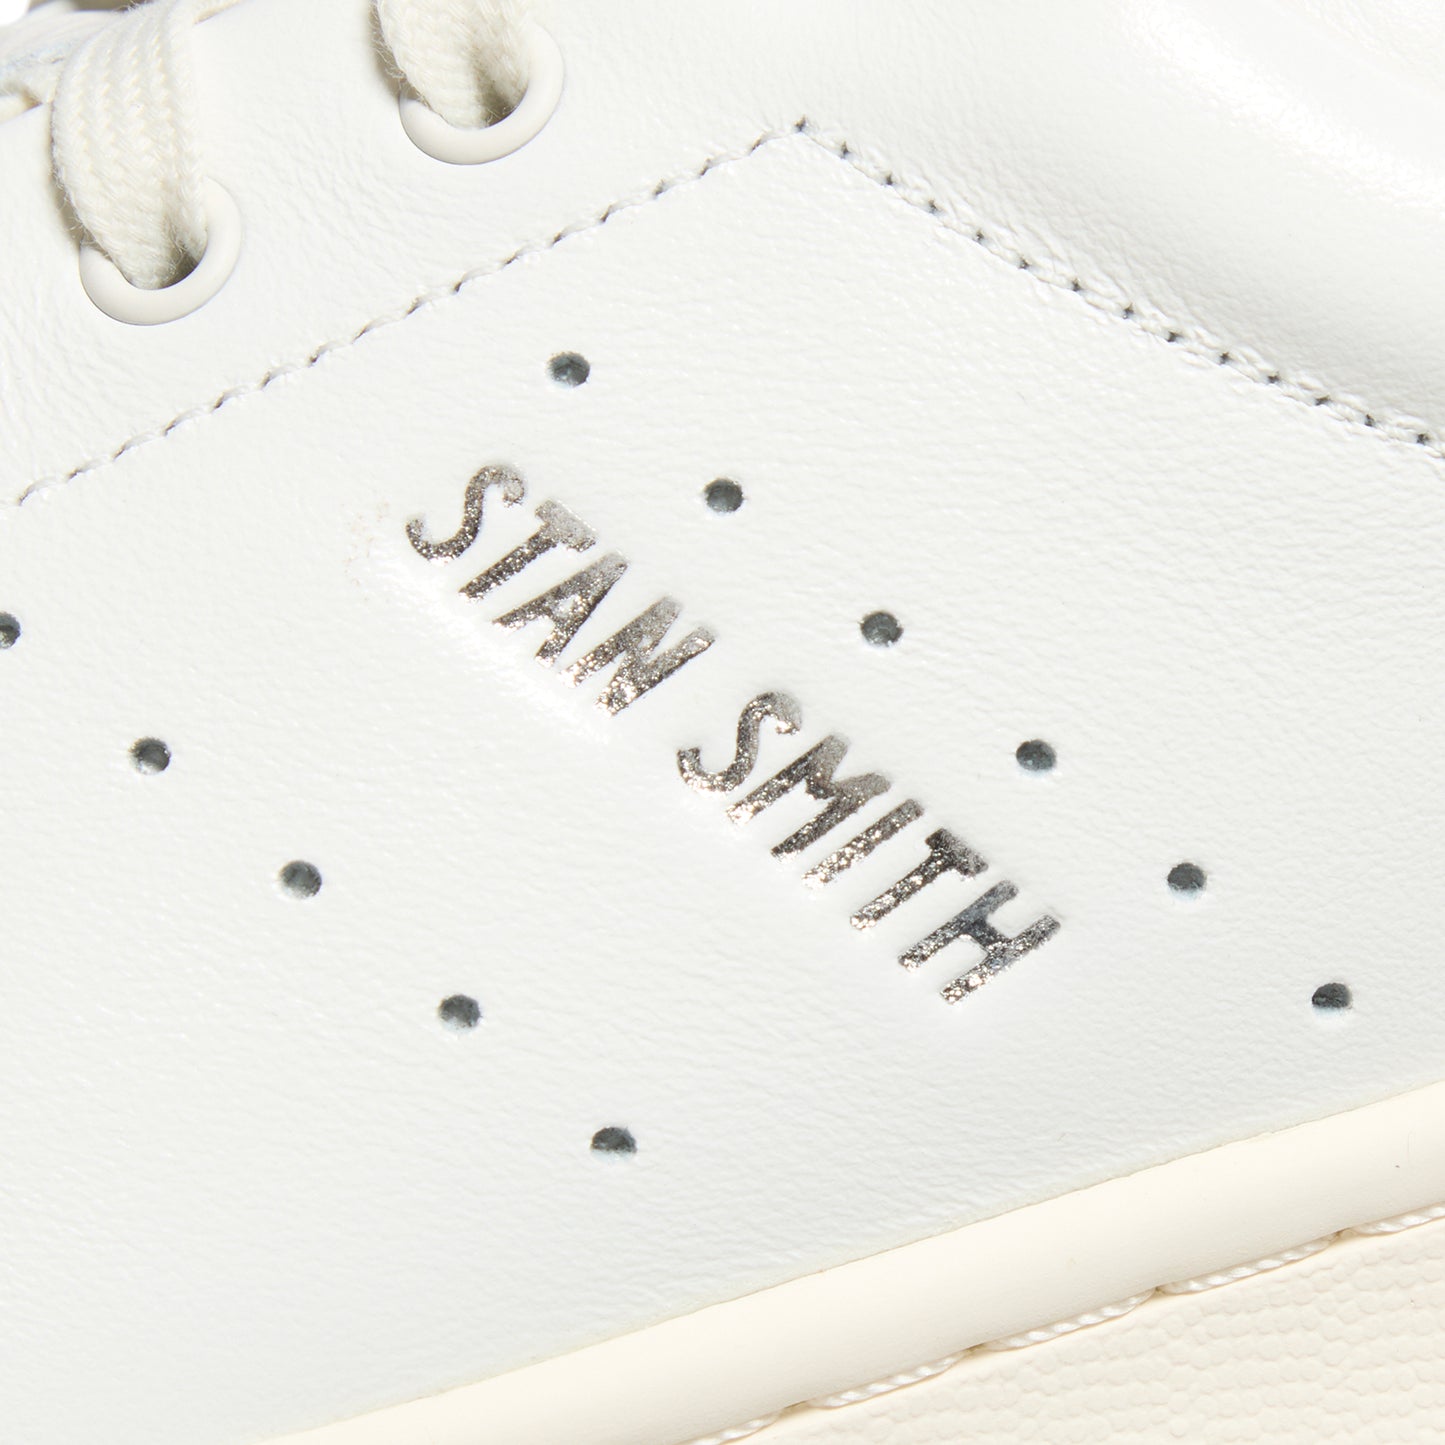 Adidas Stan Smith Lux (Cloud White/Off White)